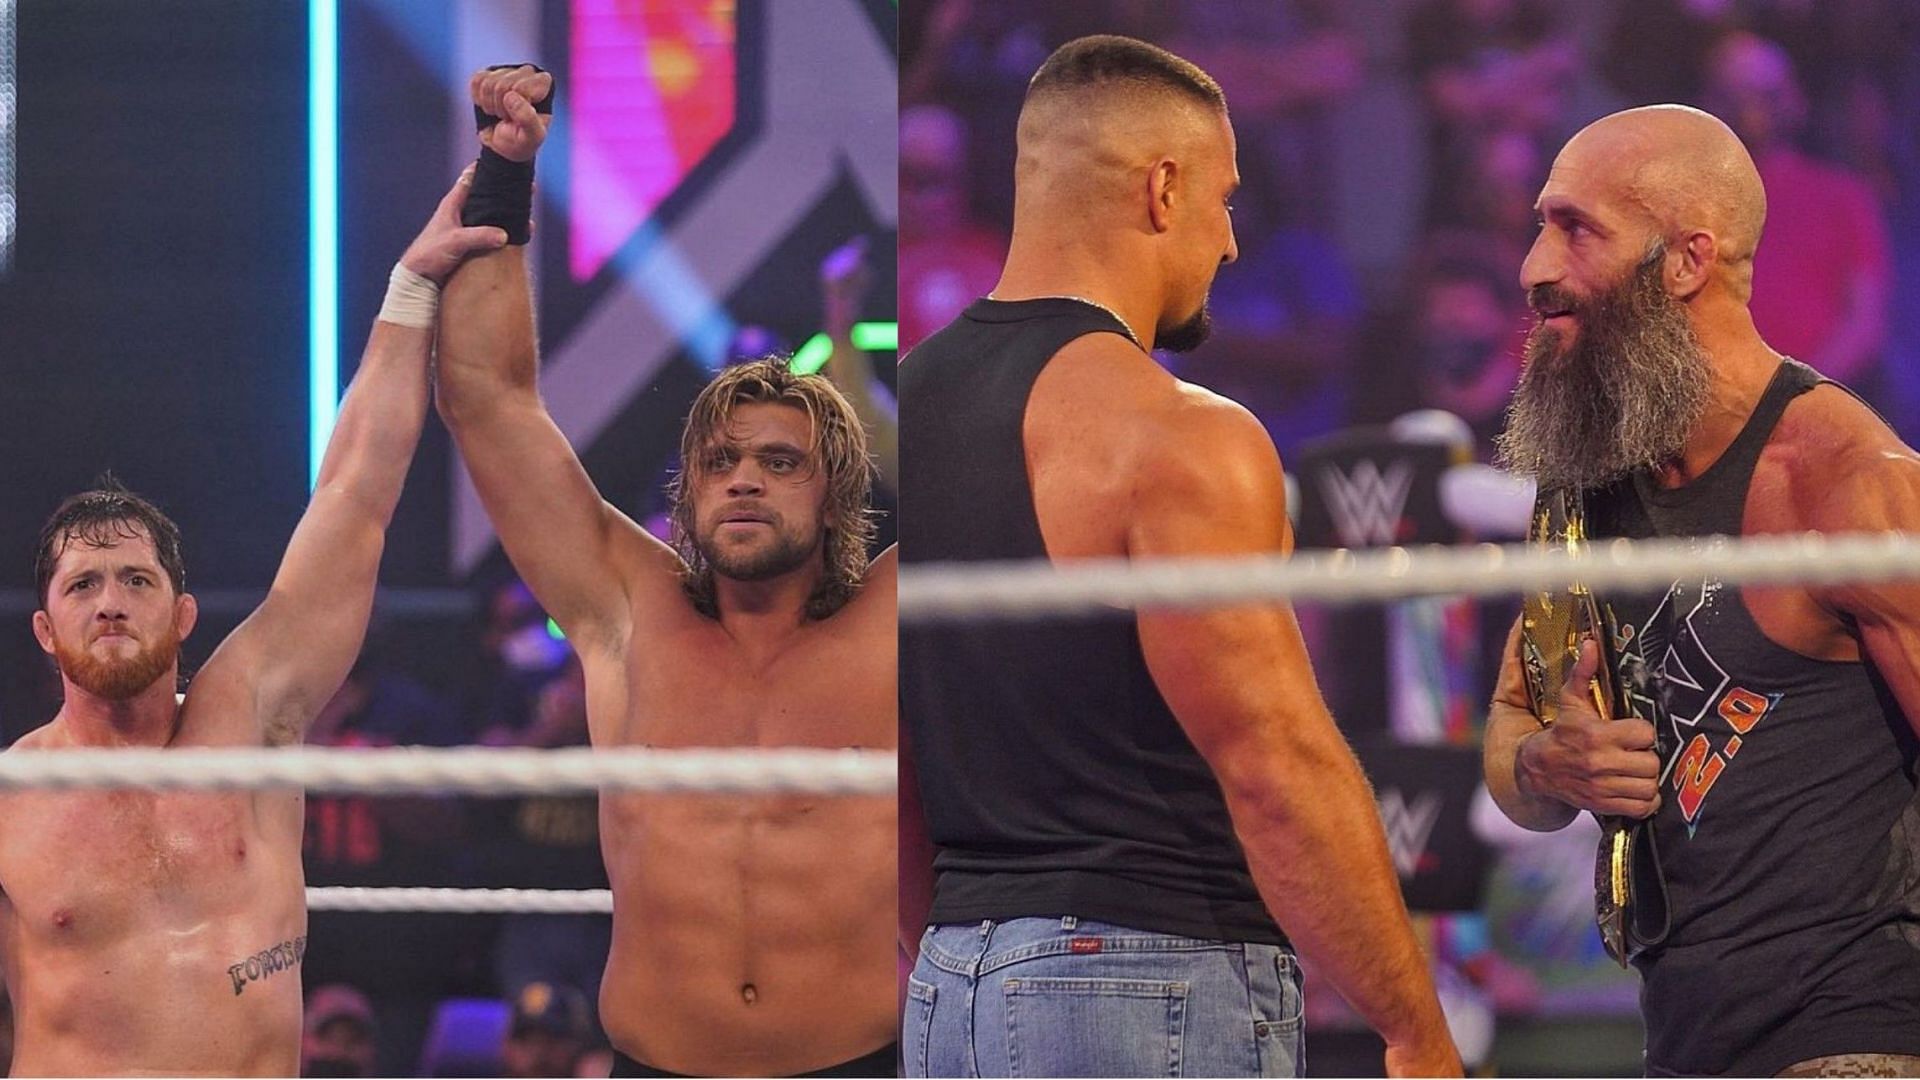 WWE NXT को लेकर फैंस की अलग-अलग प्रतिक्रियाएं रही